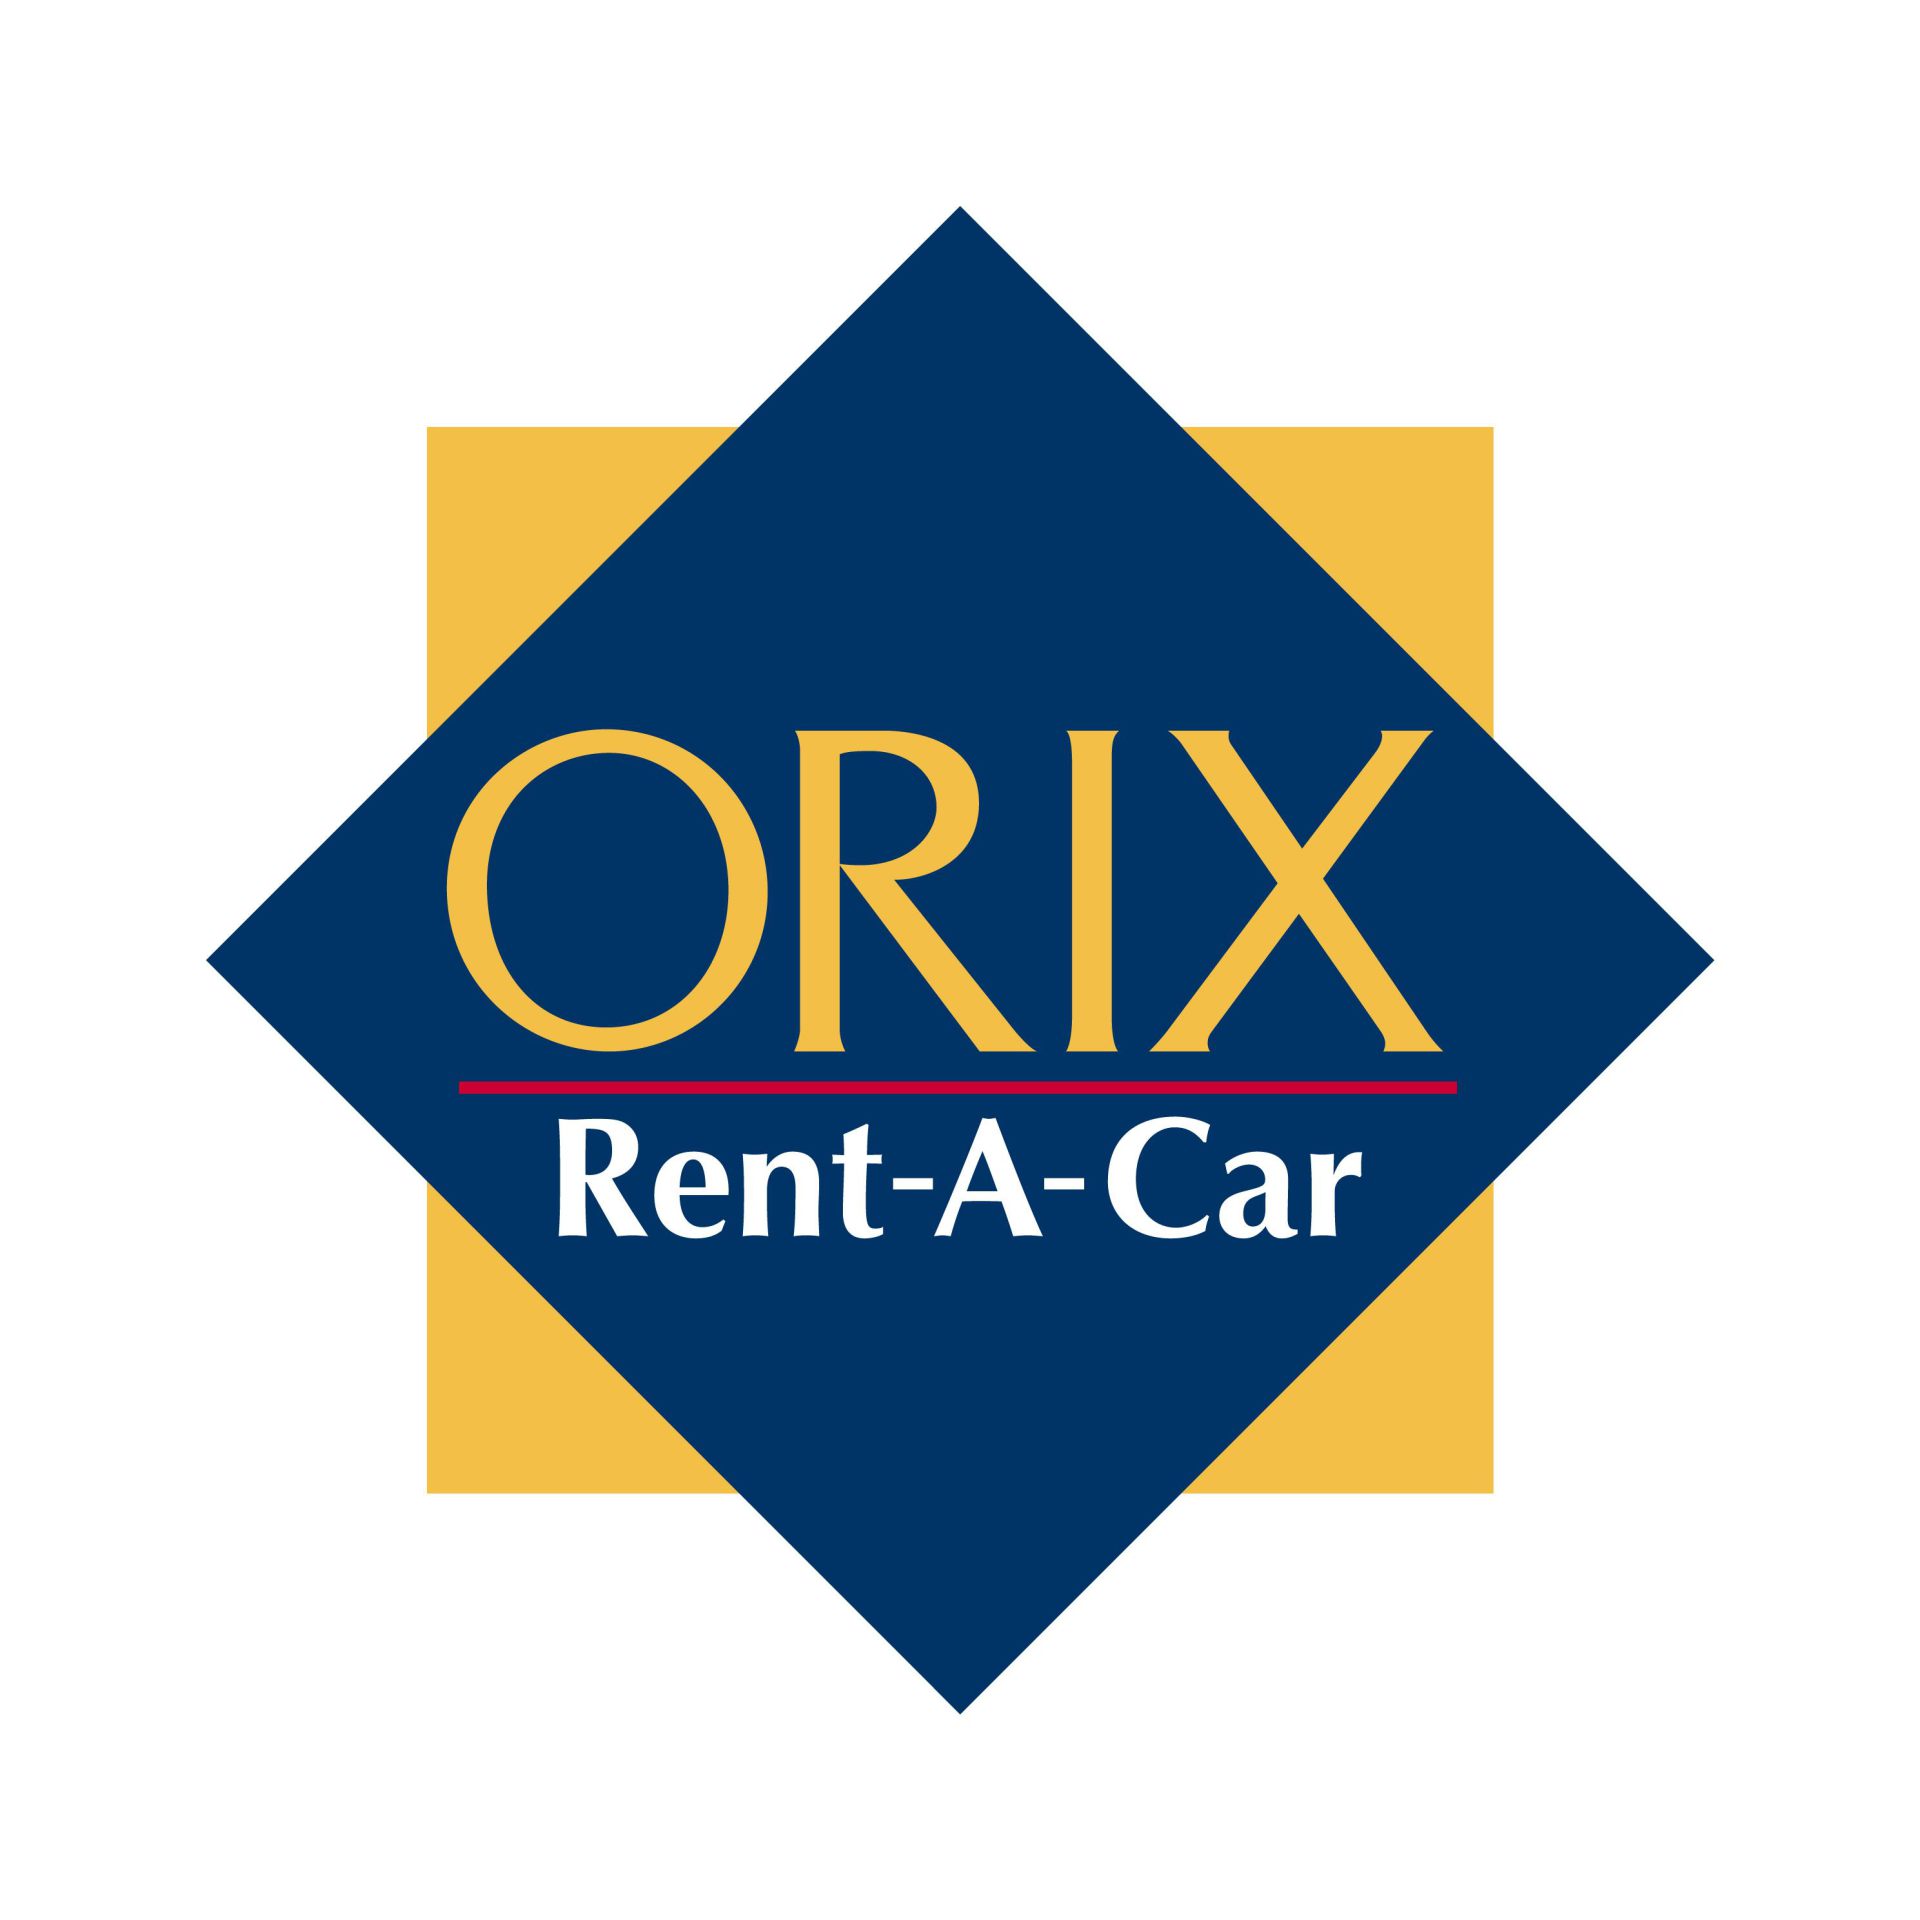 ORIX Rent-A-Car Uehonmachi Counter